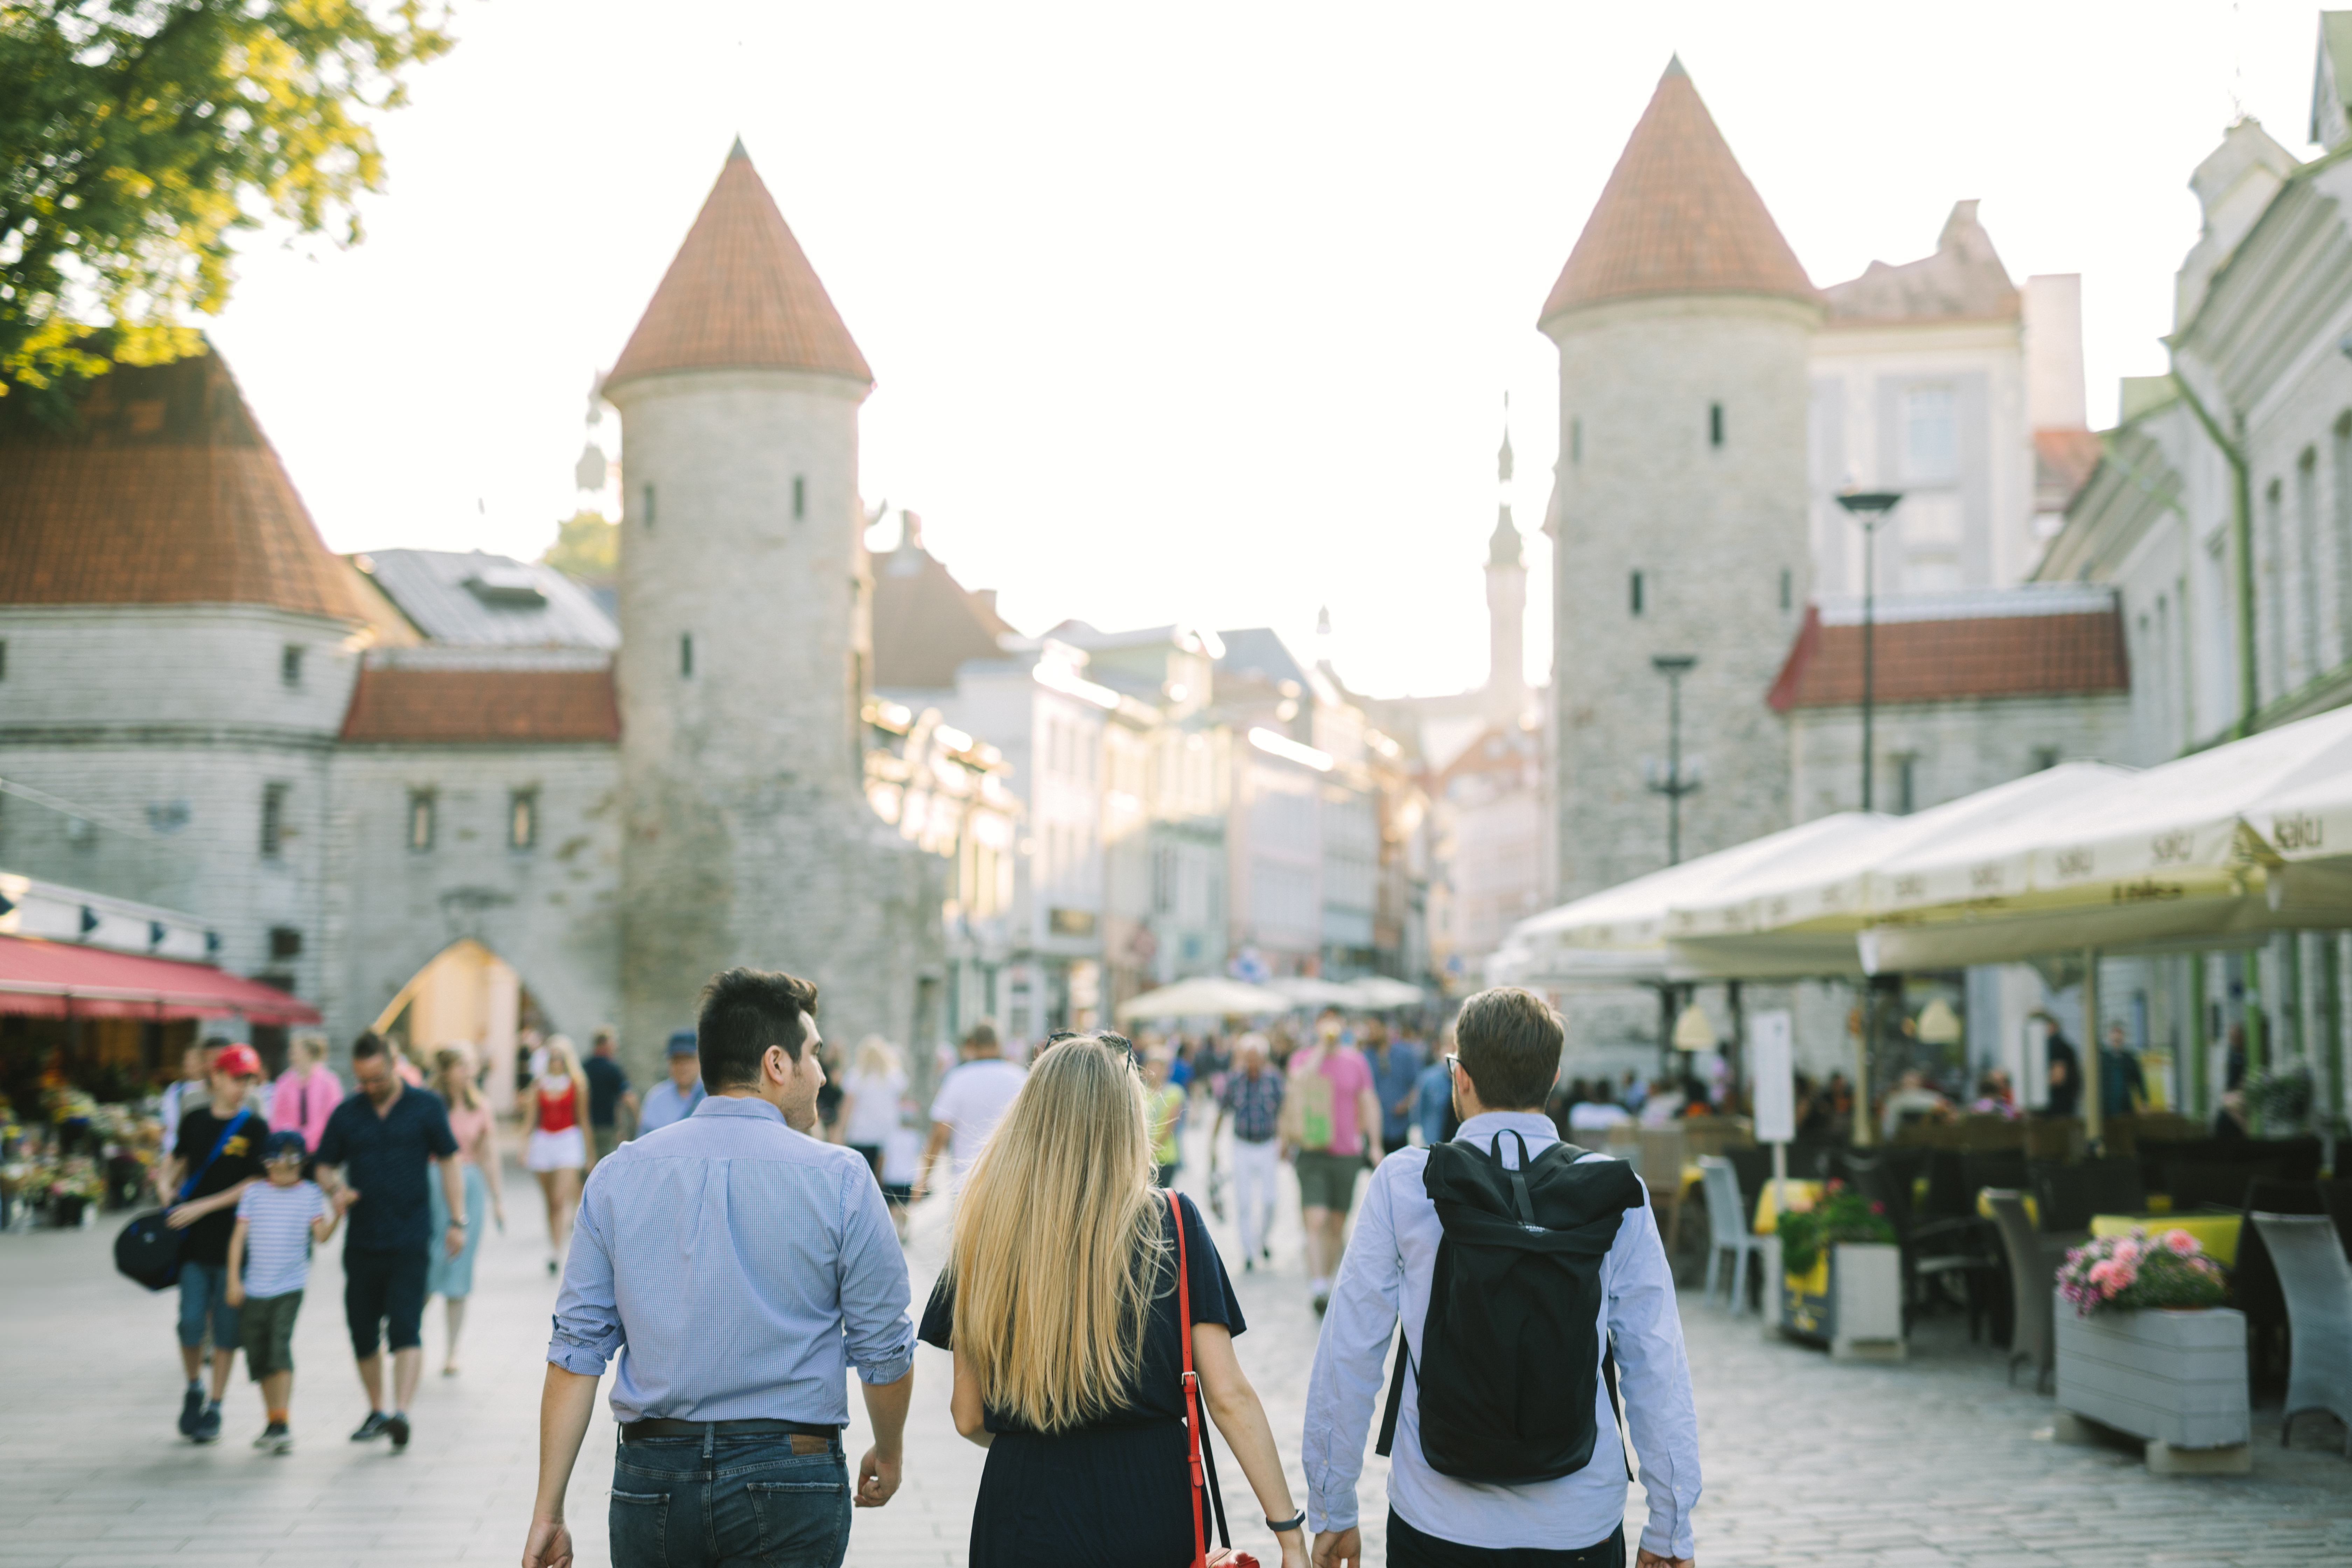 Kolm turisti jalutamas Tallinna vanalinnas Viru väravate poole.